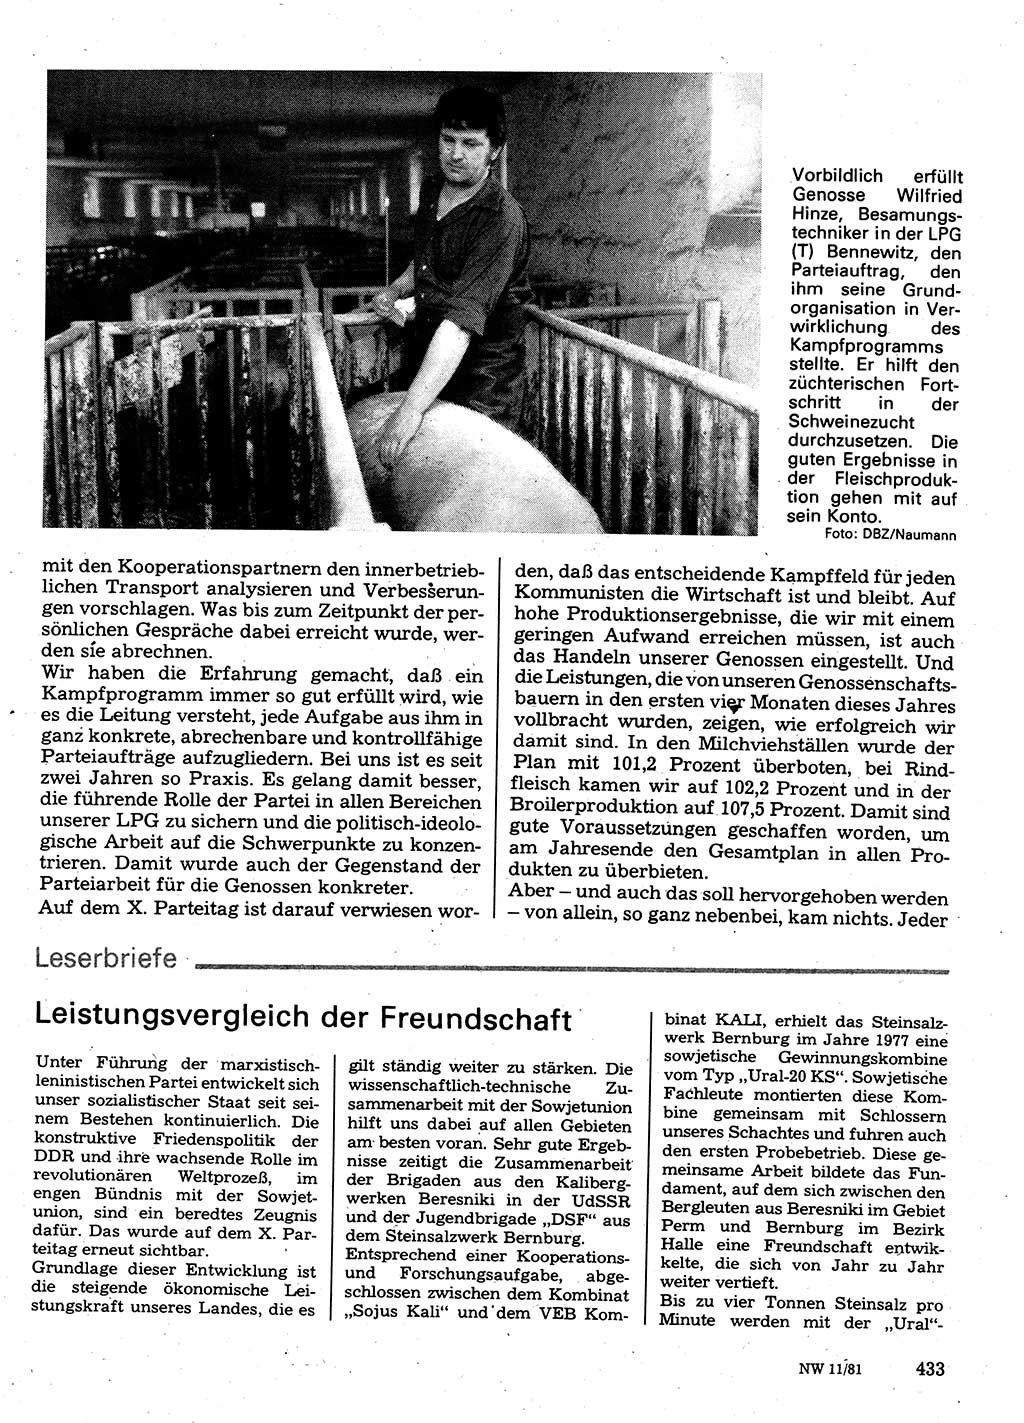 Neuer Weg (NW), Organ des Zentralkomitees (ZK) der SED (Sozialistische Einheitspartei Deutschlands) für Fragen des Parteilebens, 36. Jahrgang [Deutsche Demokratische Republik (DDR)] 1981, Seite 433 (NW ZK SED DDR 1981, S. 433)